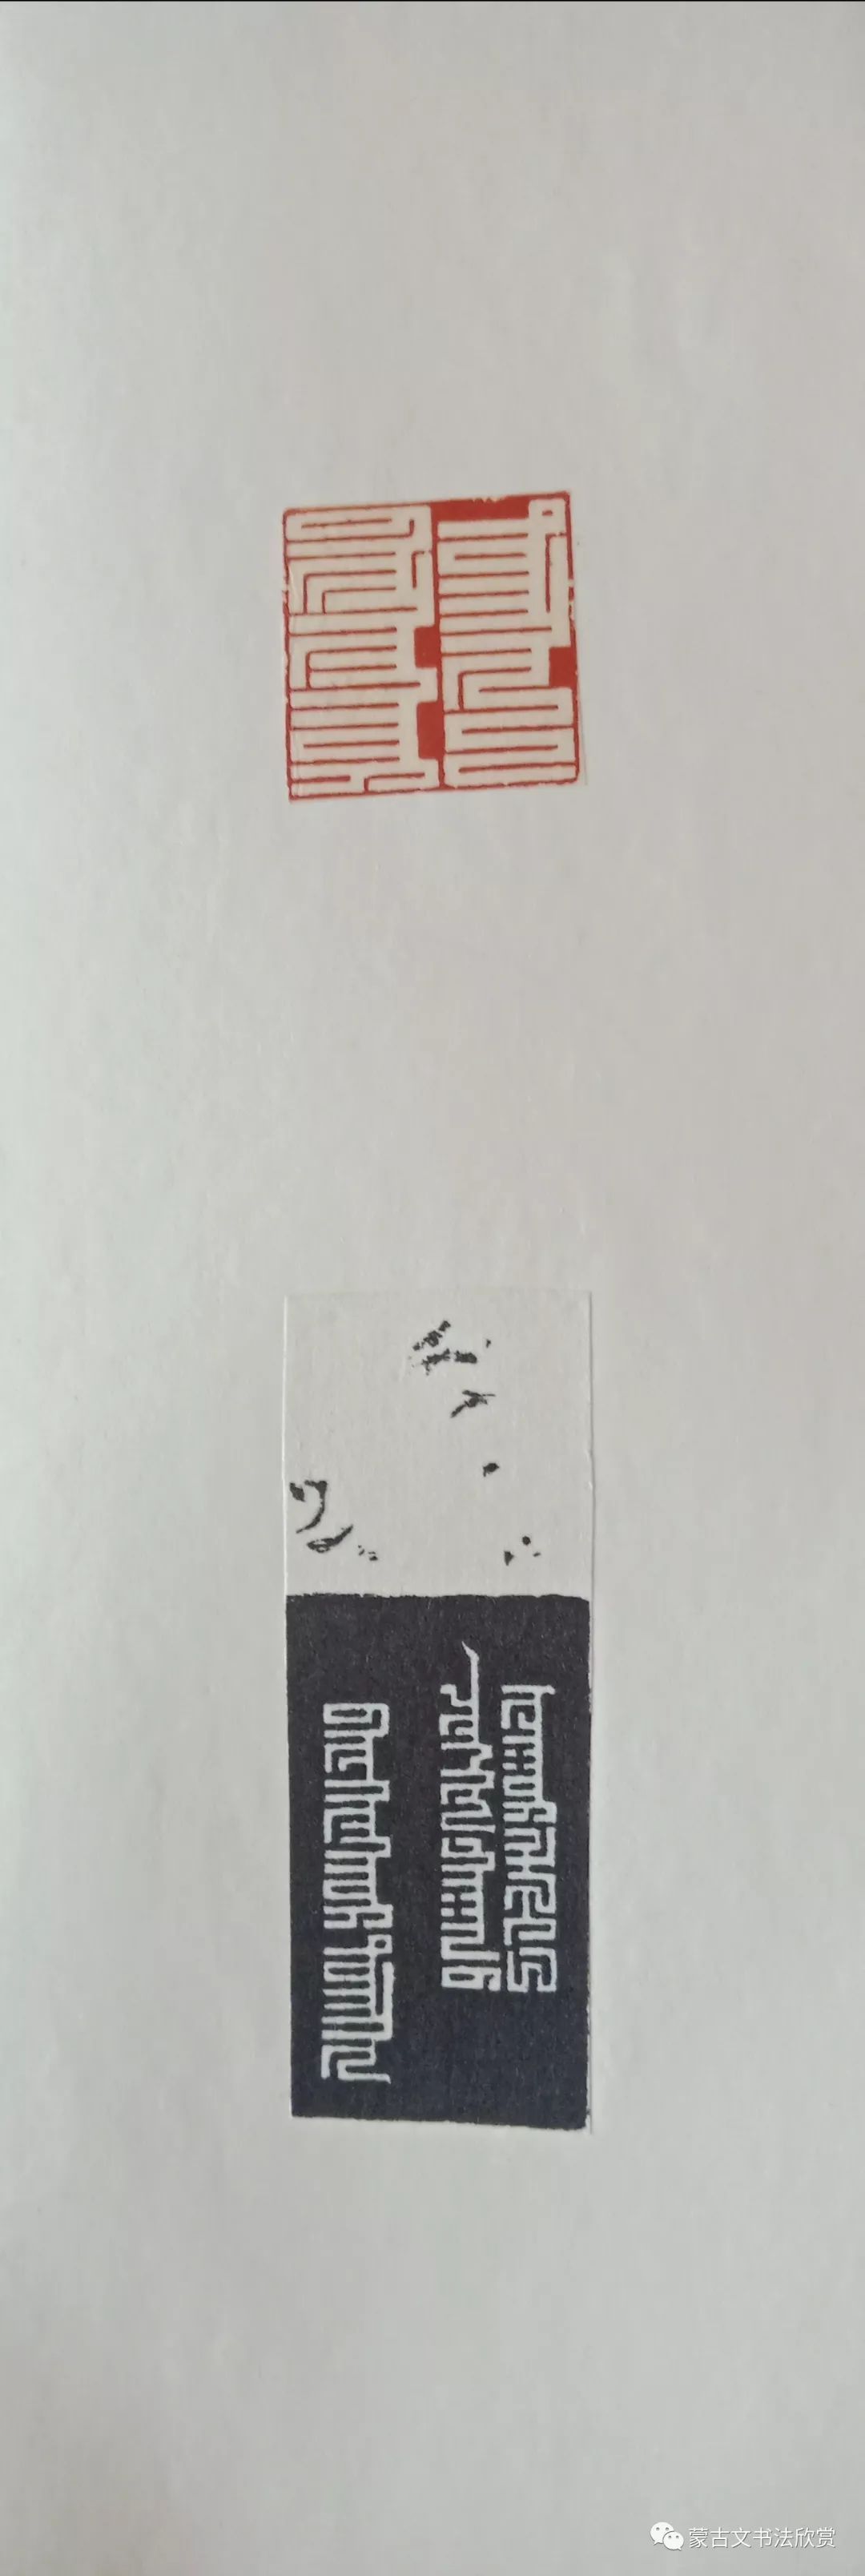 蒙古文书法欣赏——白七斤半 第21张